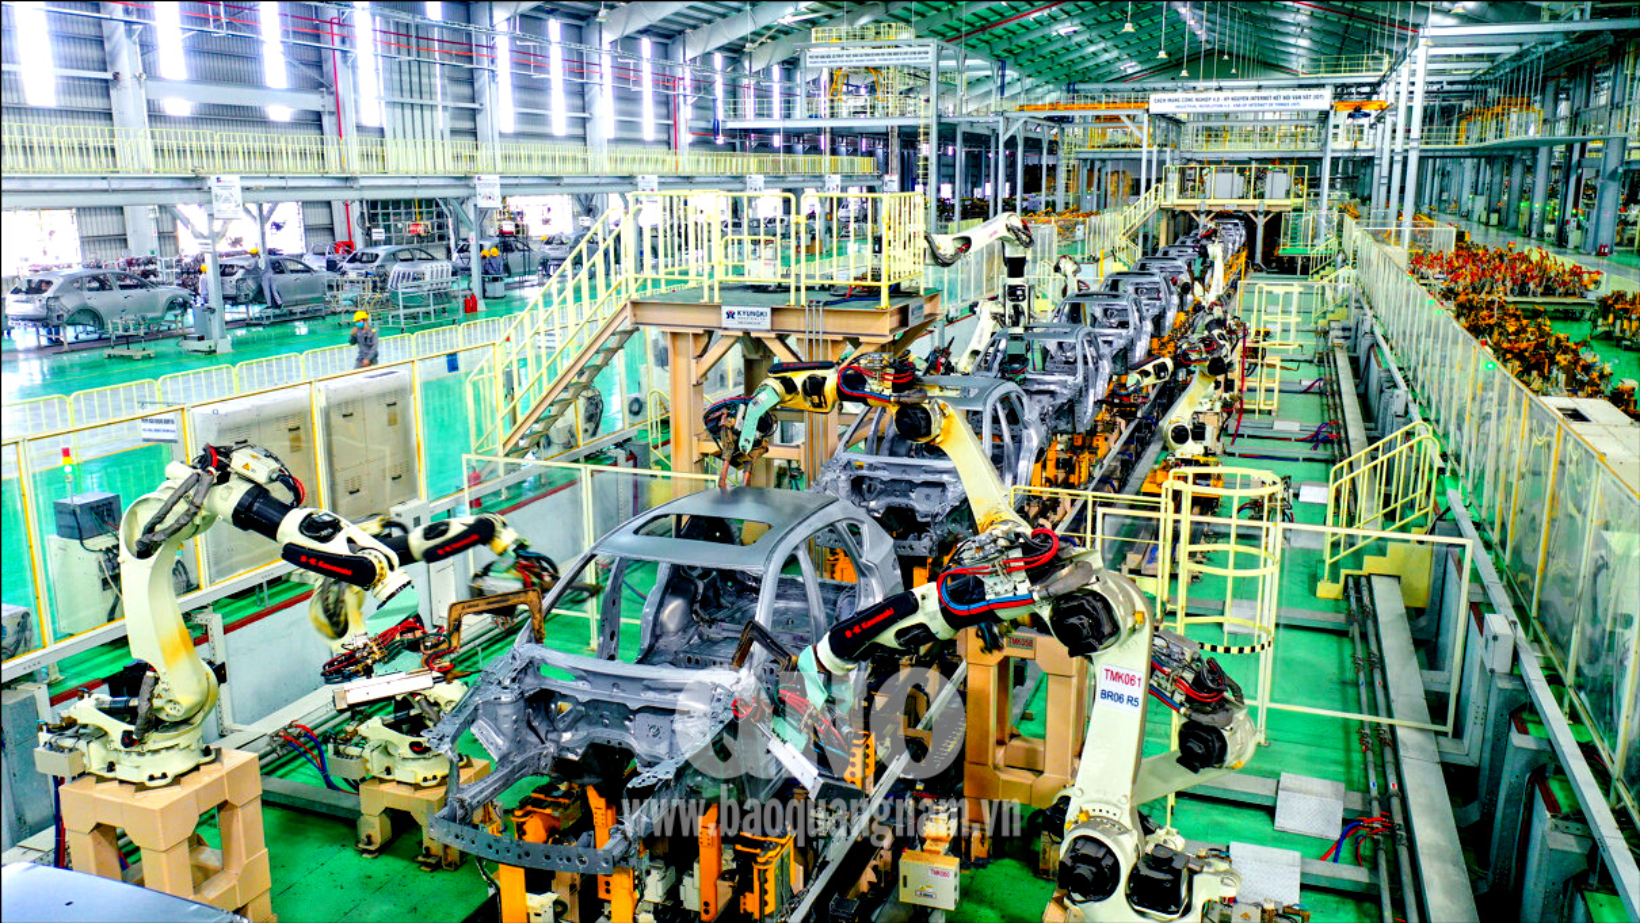 Thaco - cánh chim đầu đàn chọn Núi Thành làm “đại bản doanh“, định hình ngành công nghiệp ô tô quốc gia.